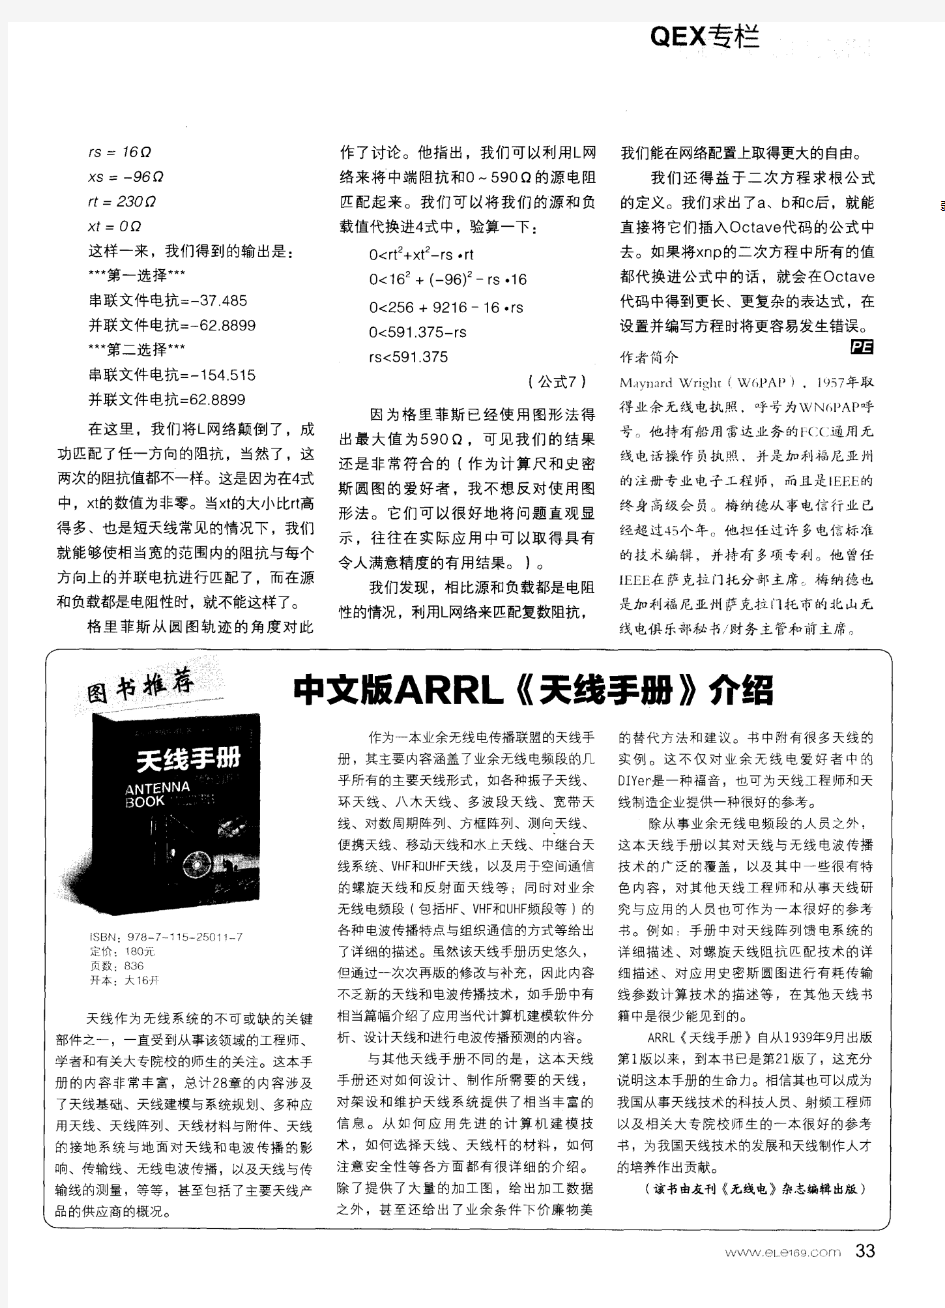 中文版ARRL《天线手册》介绍